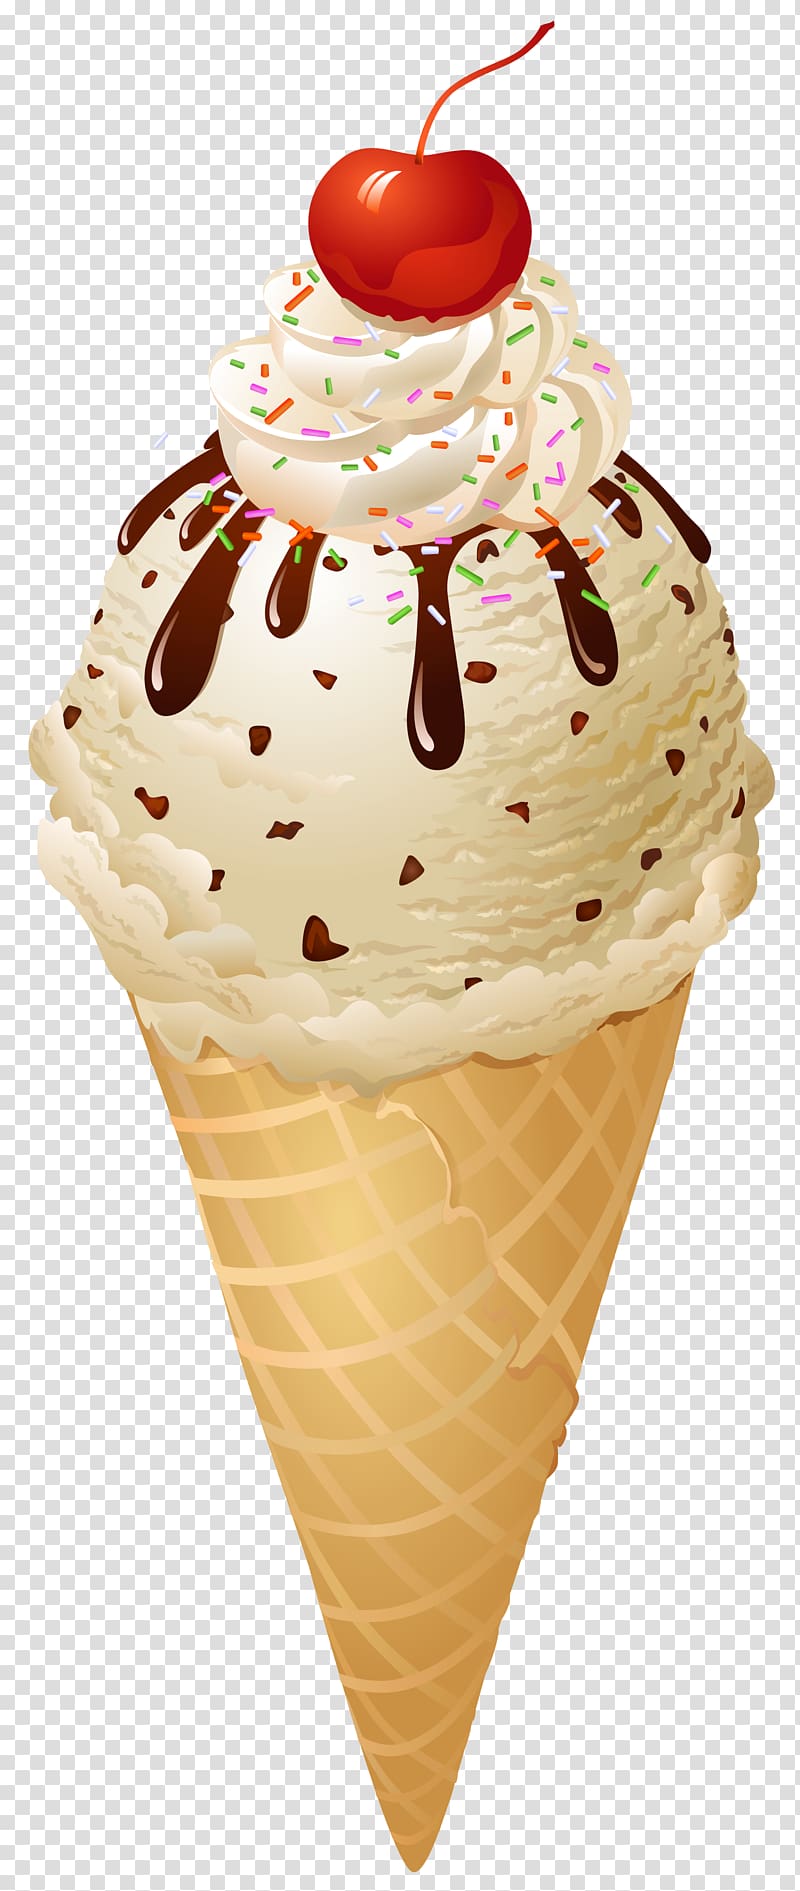 Ice cream cone Chocolate ice cream Sundae, Fancy vanilla cones free matting transparent background PNG clipart